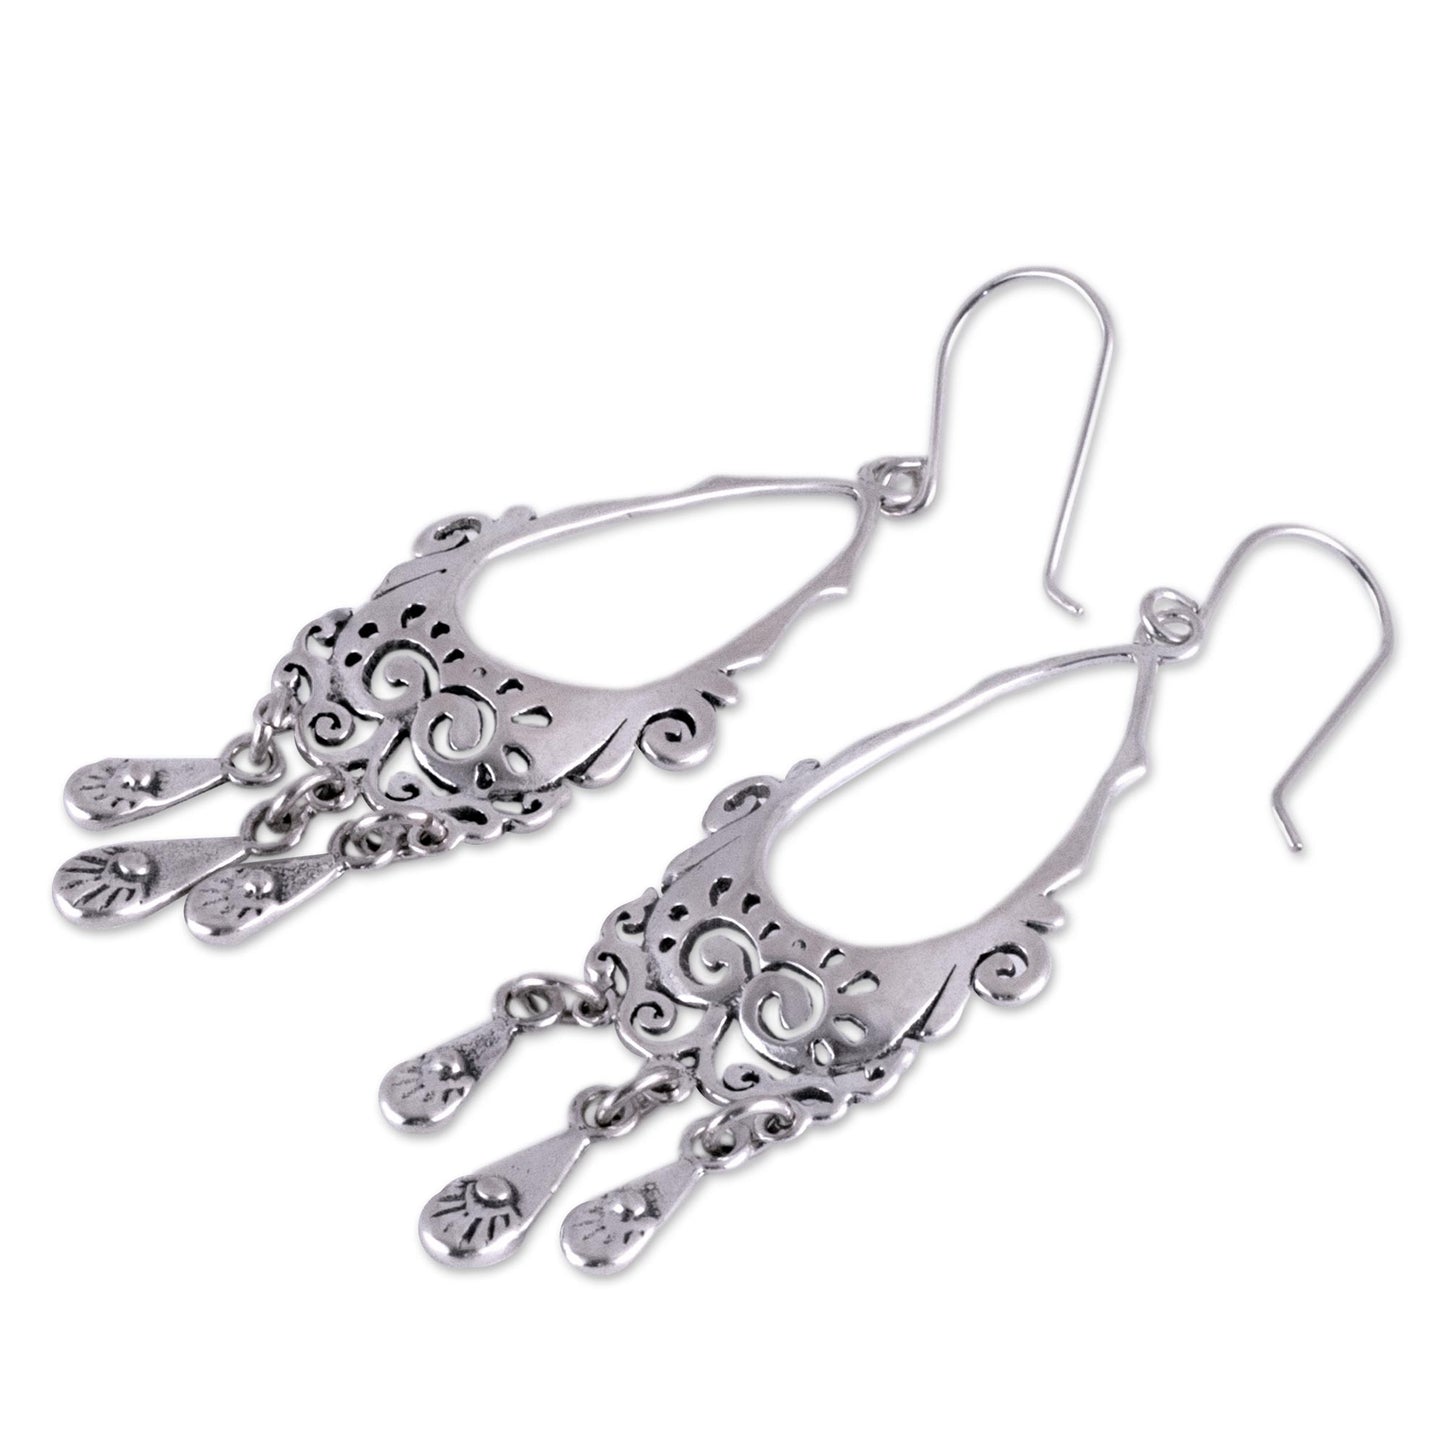 Taxco Treasure Silver Chandelier Earrings